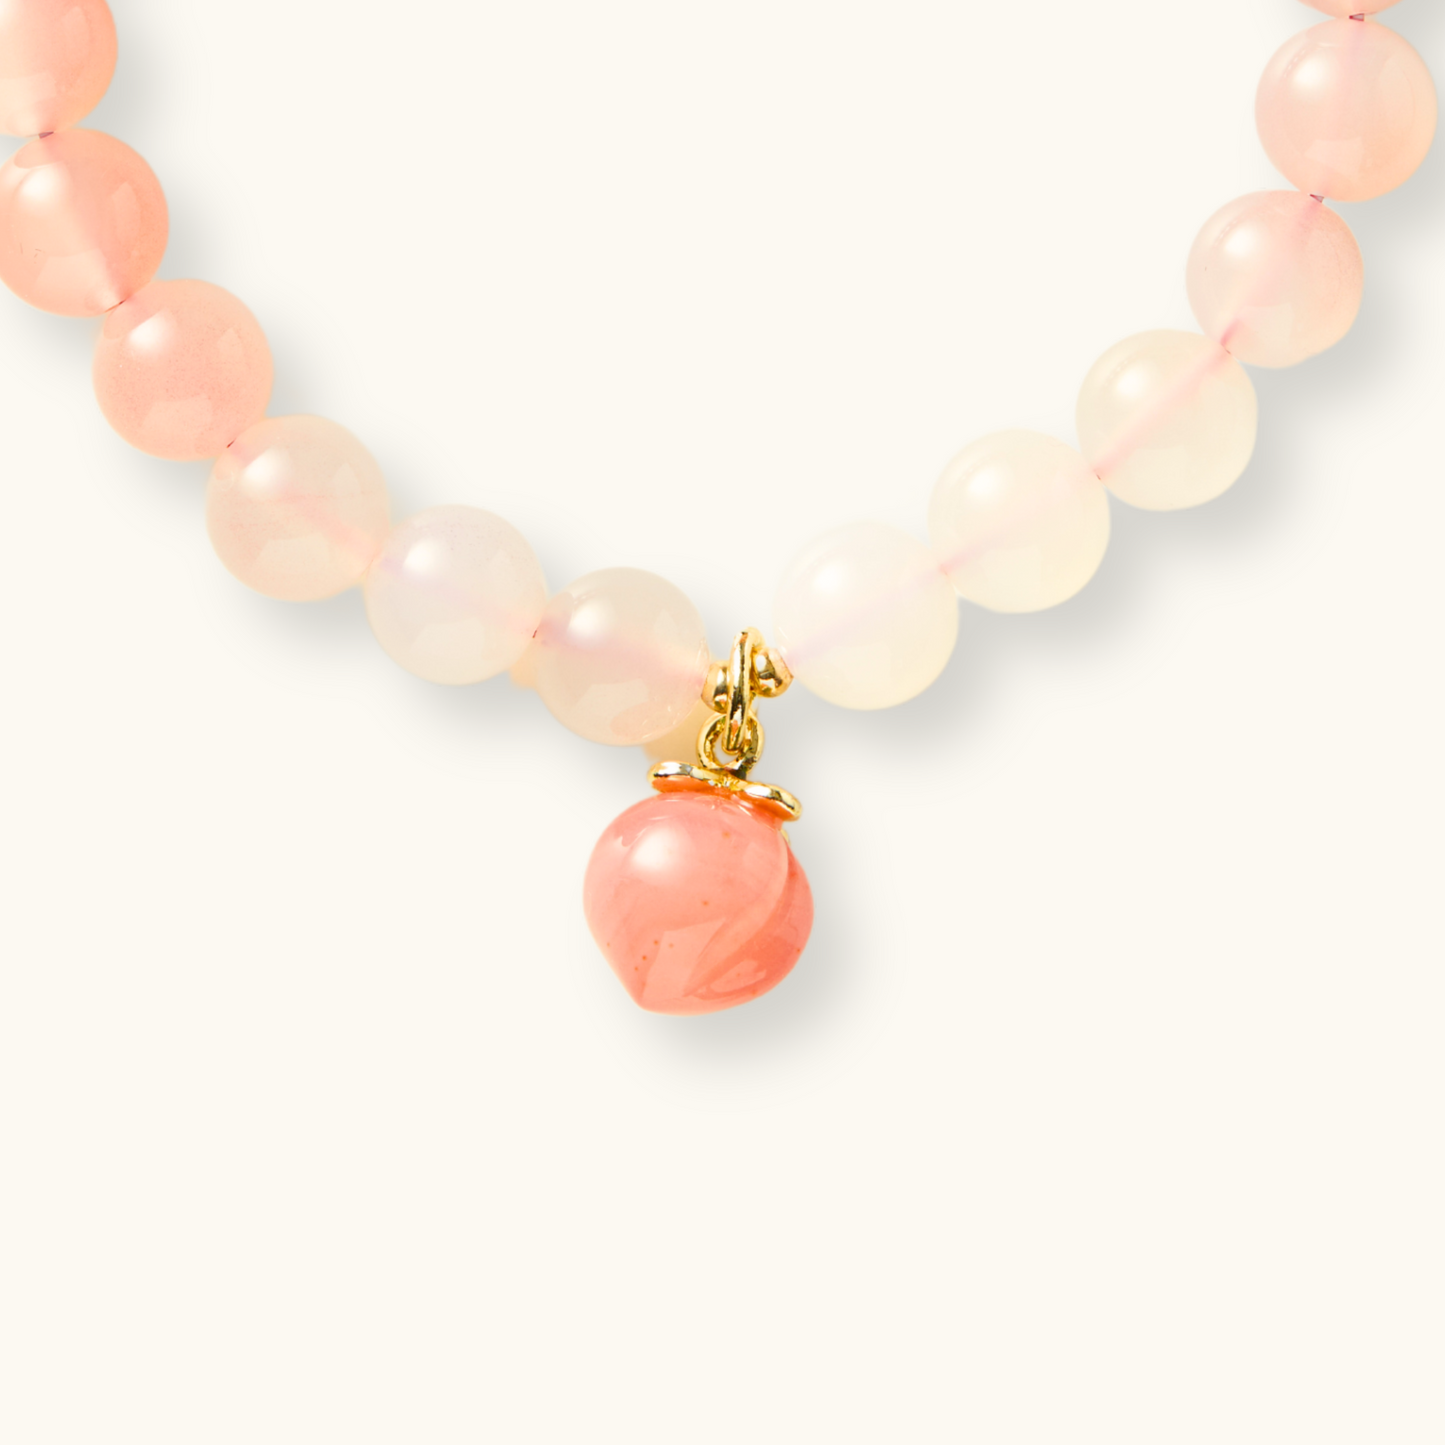 Peach Blossom Agate Charm Bracelet